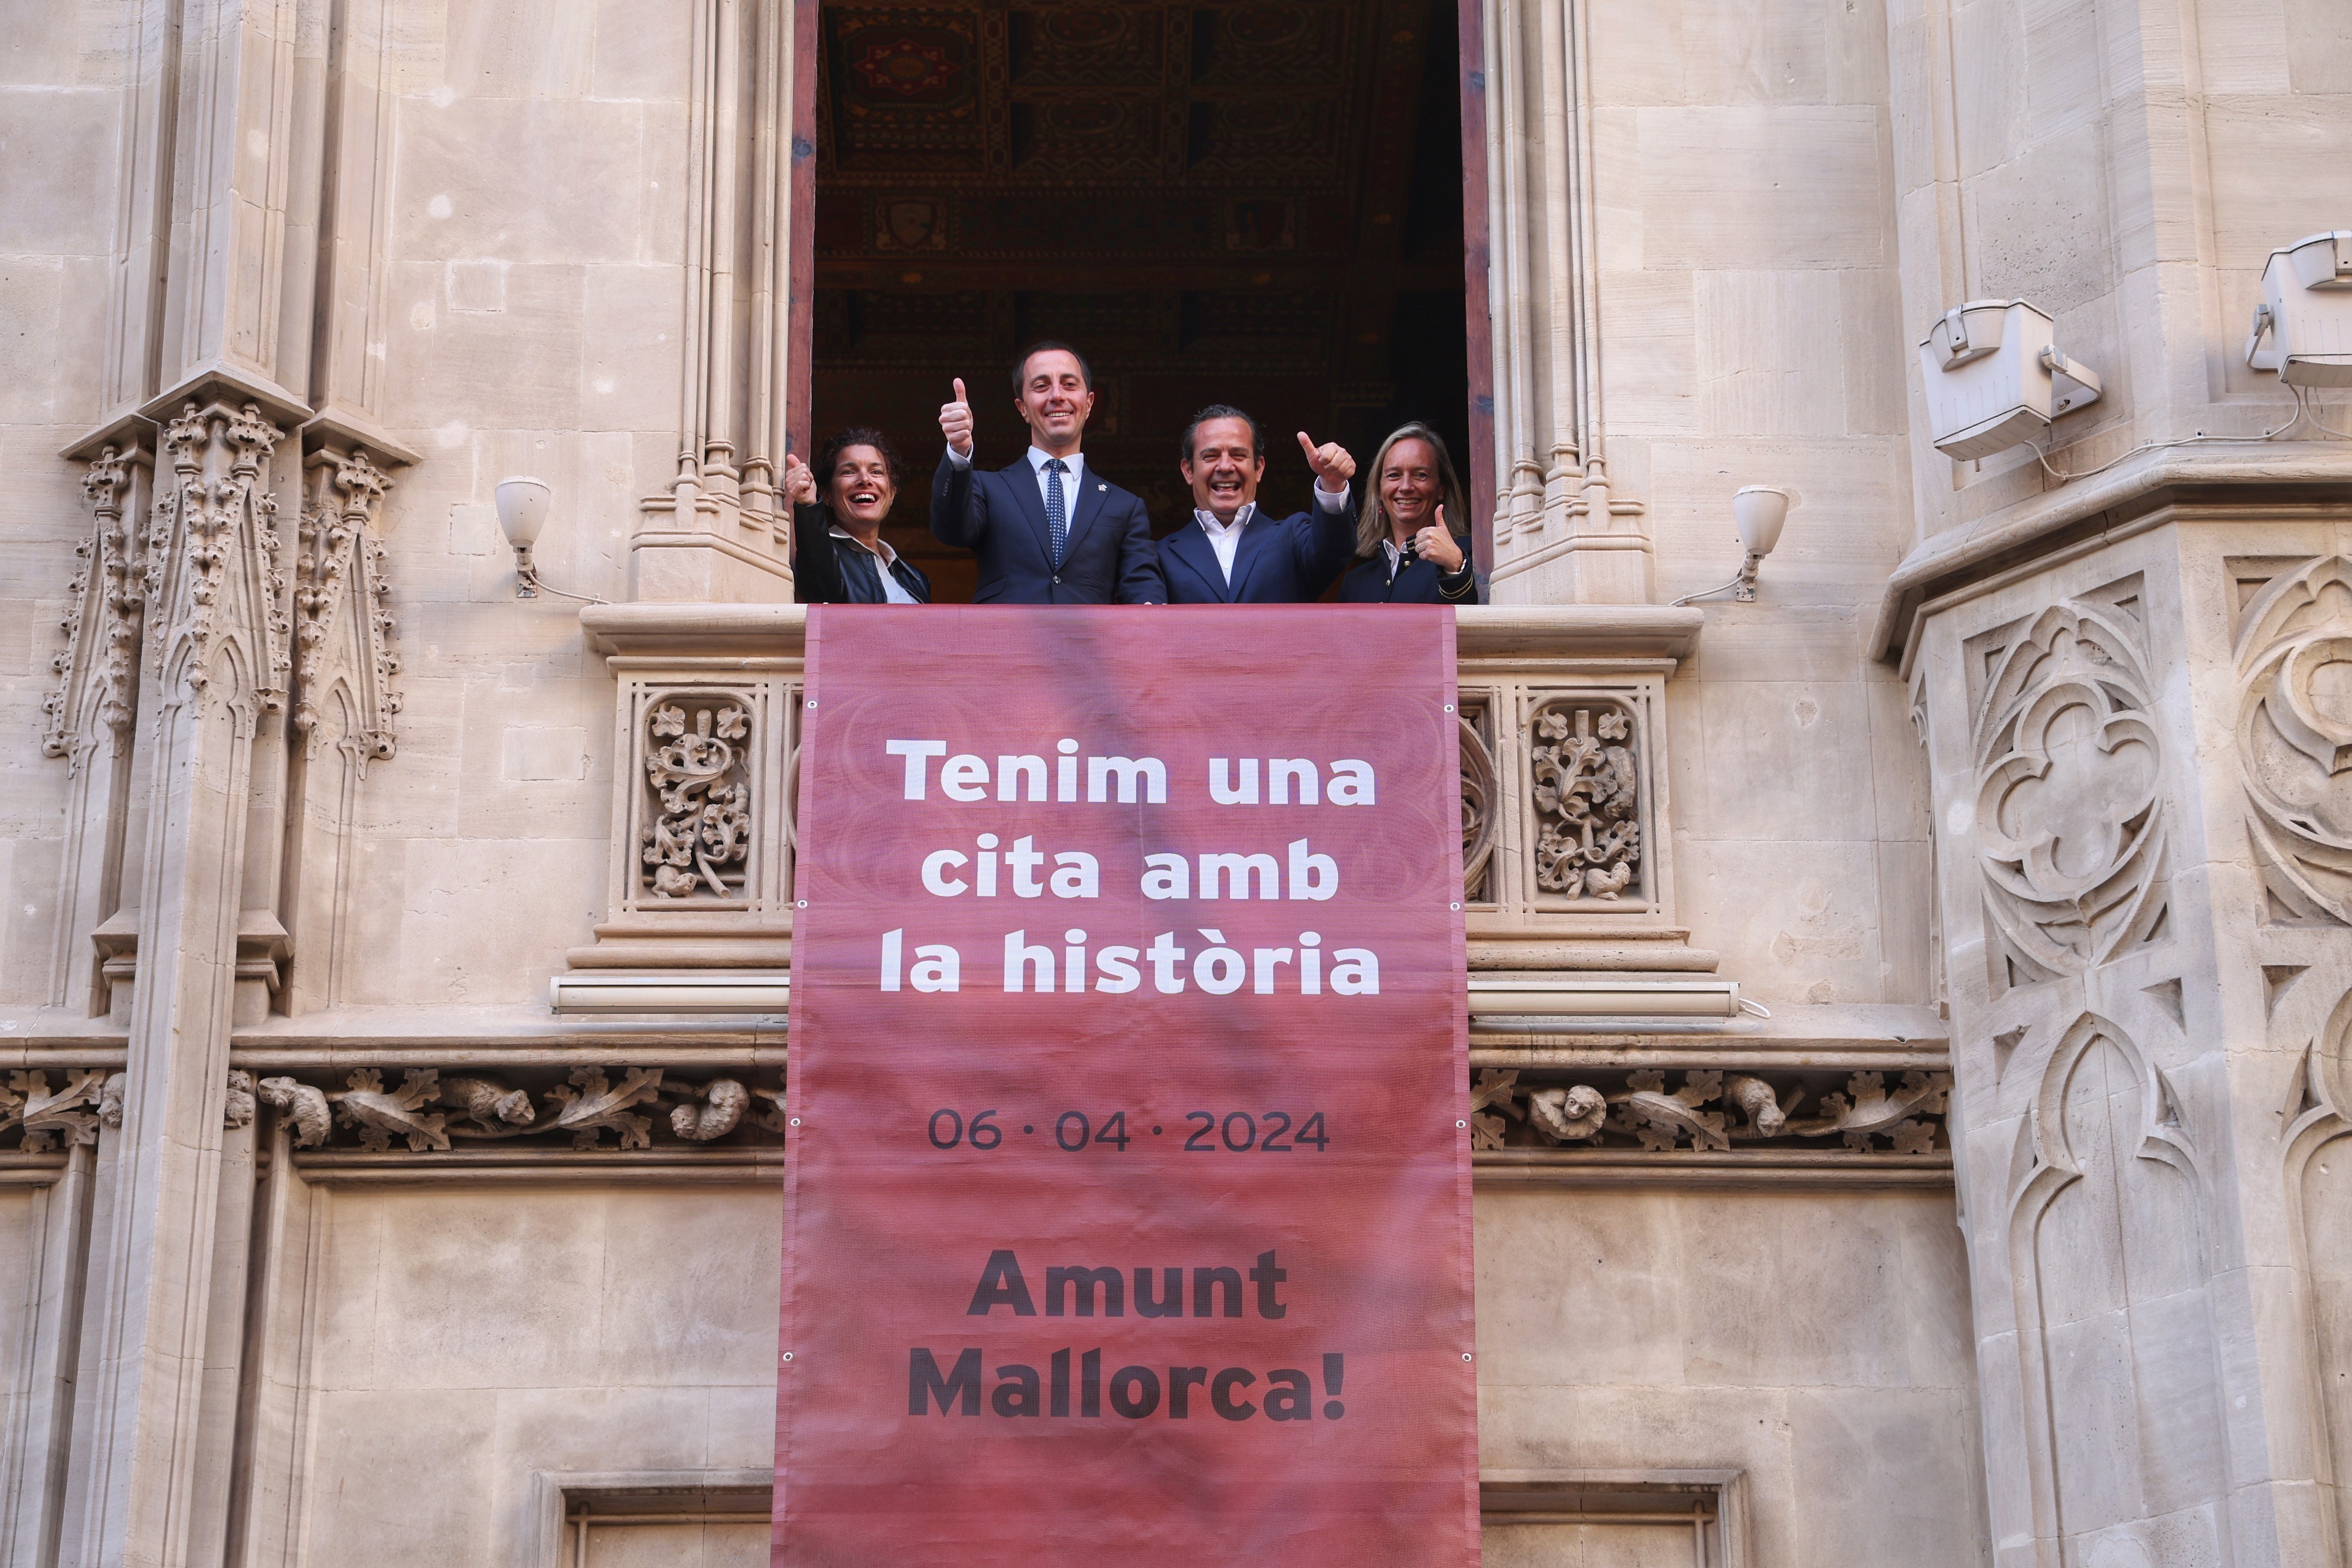 El Consell penja dues banderoles a la façana del Palau del Consell com a mostra de suport al R.C.D. Mallorca.